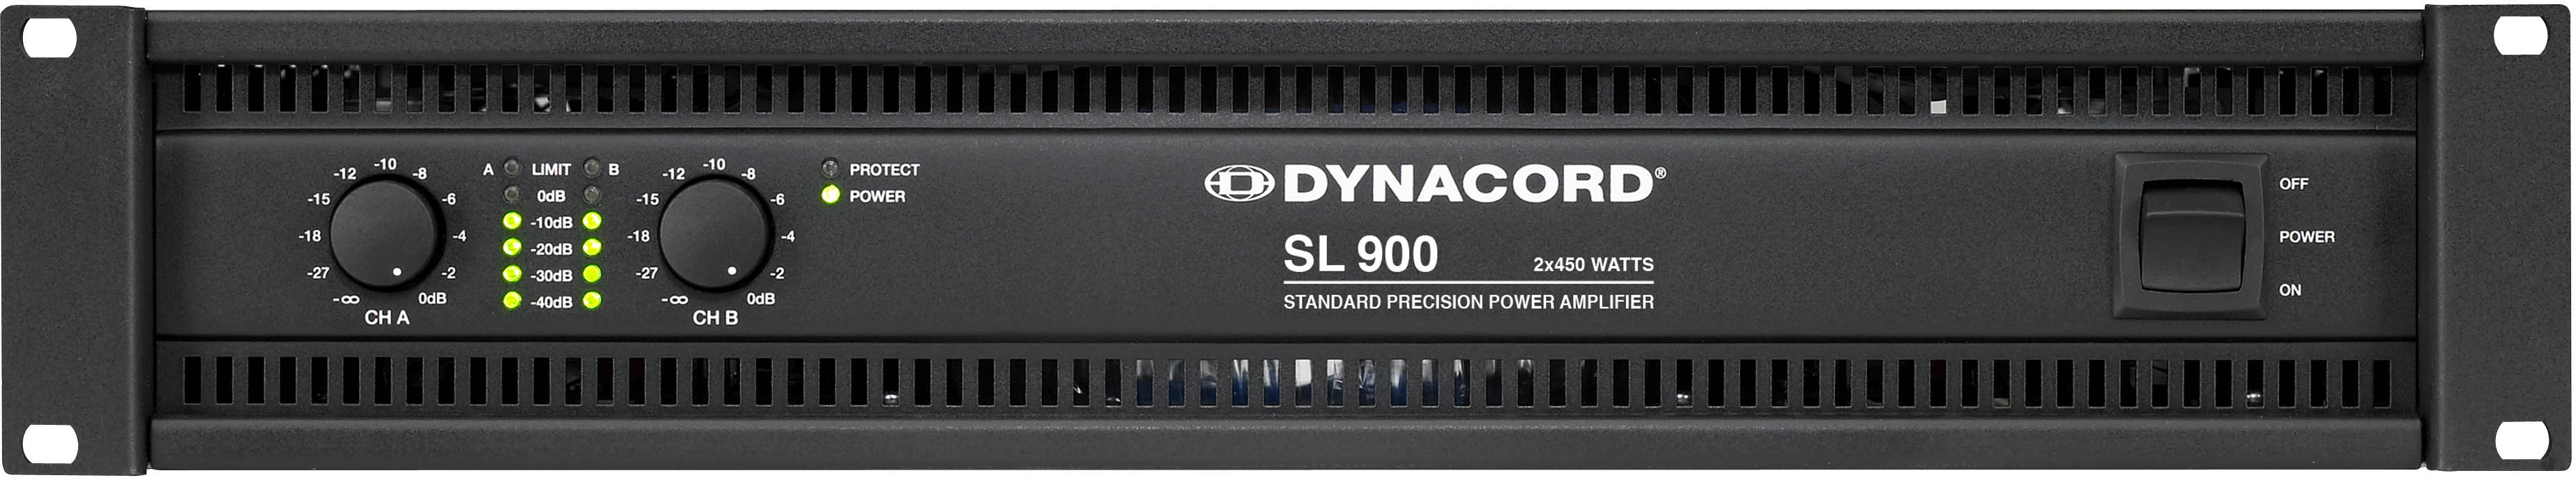 DYNACORD - SL 900 آمپلی فایر